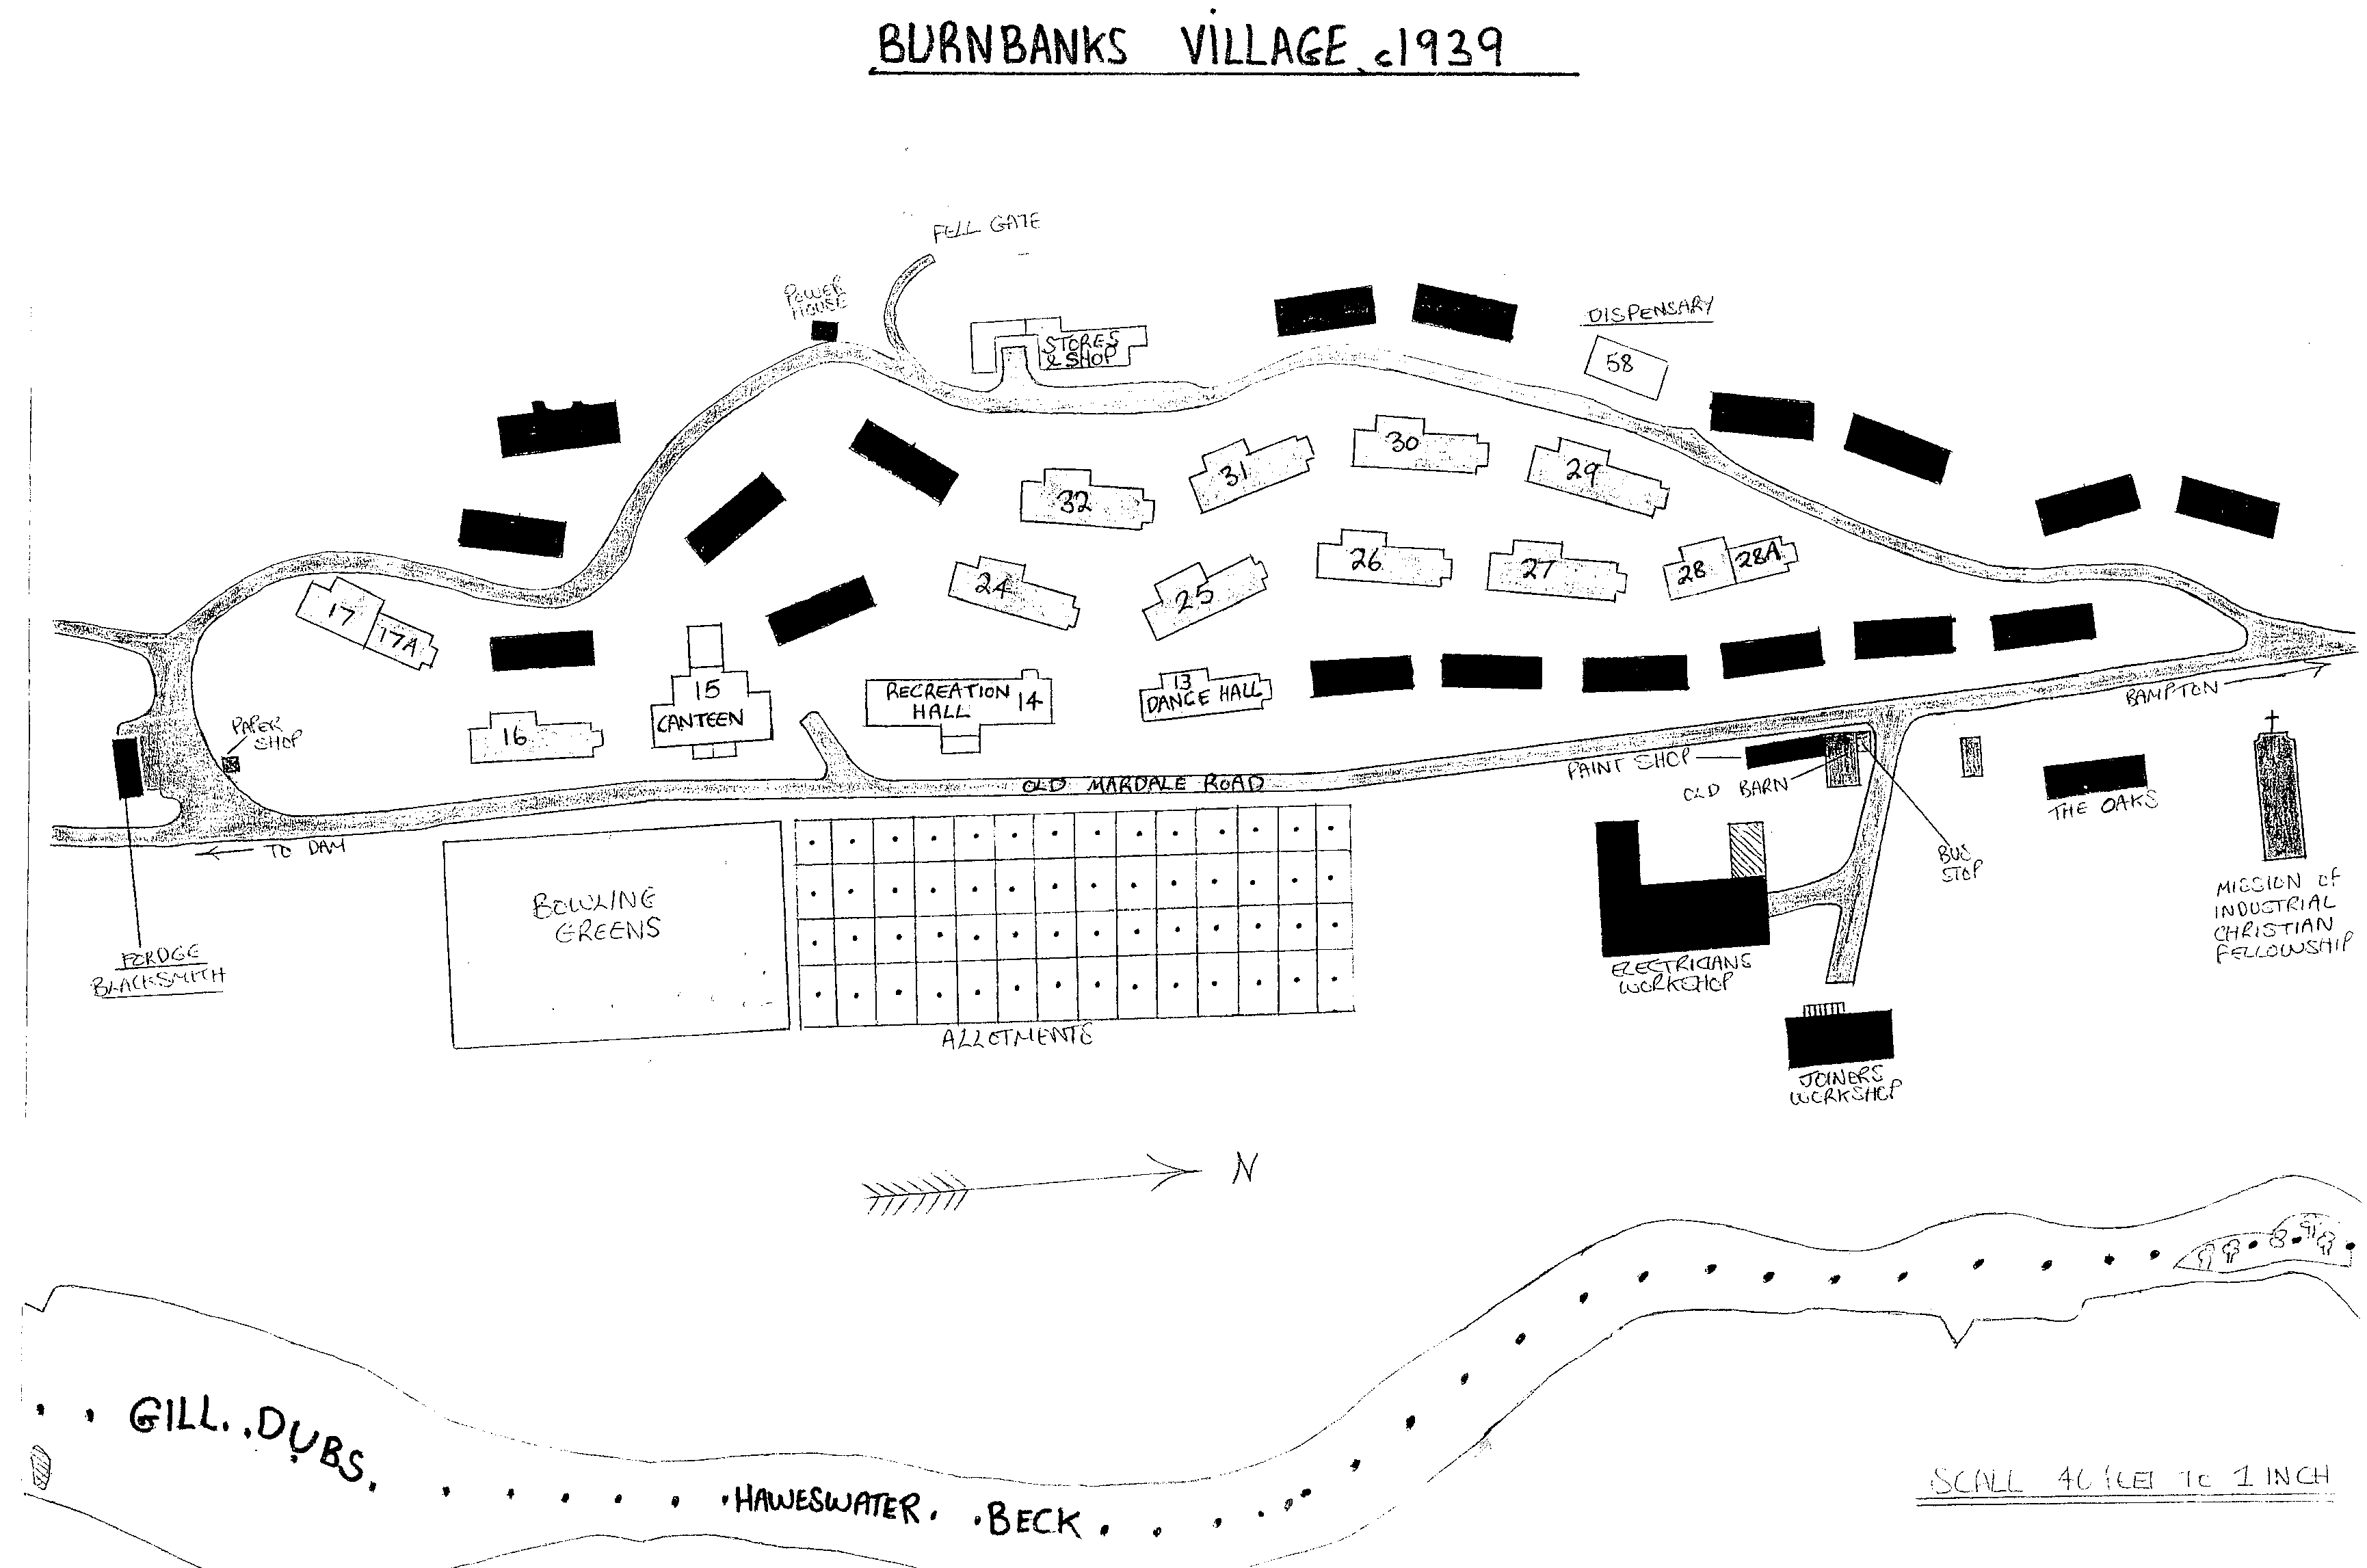 Burnbanks Village 1939 map